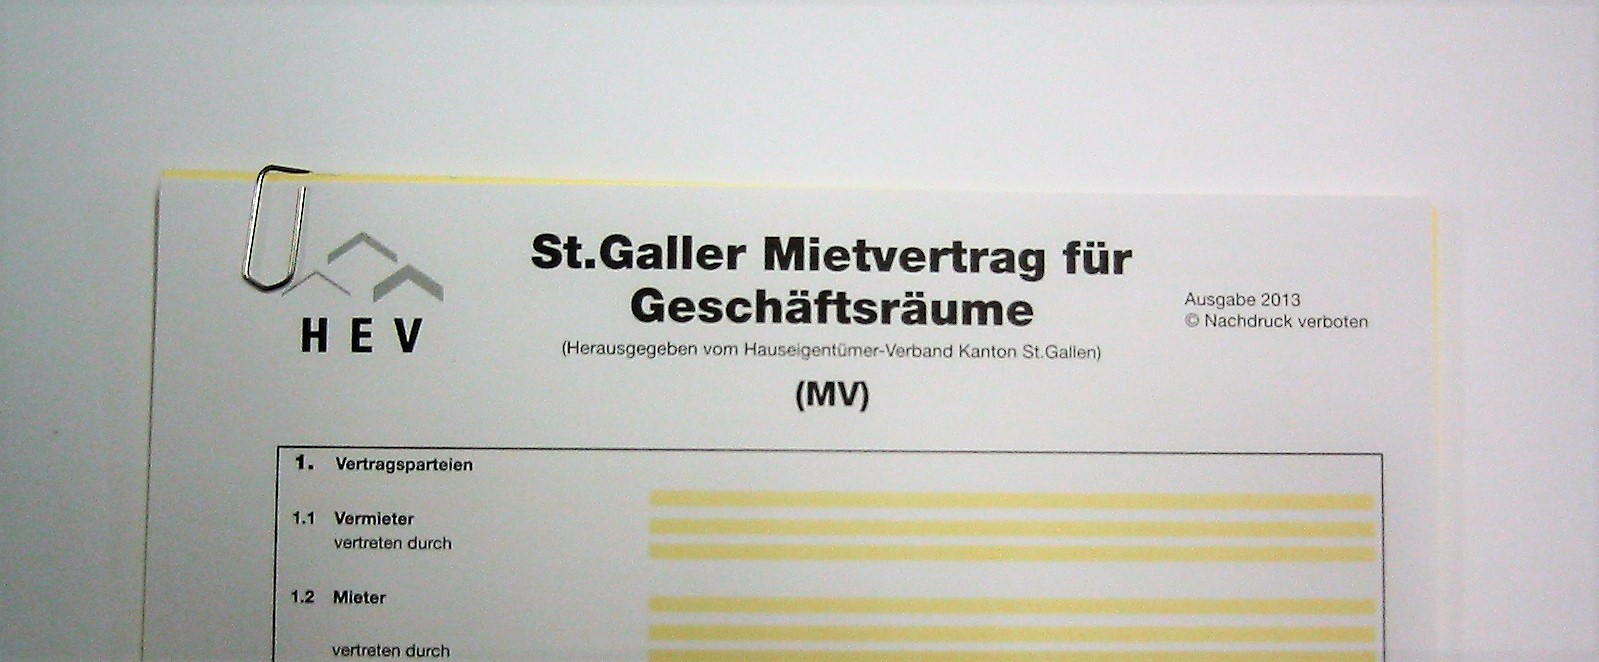 Mietvertrag für Geschäftsräume St. Gallen<br>